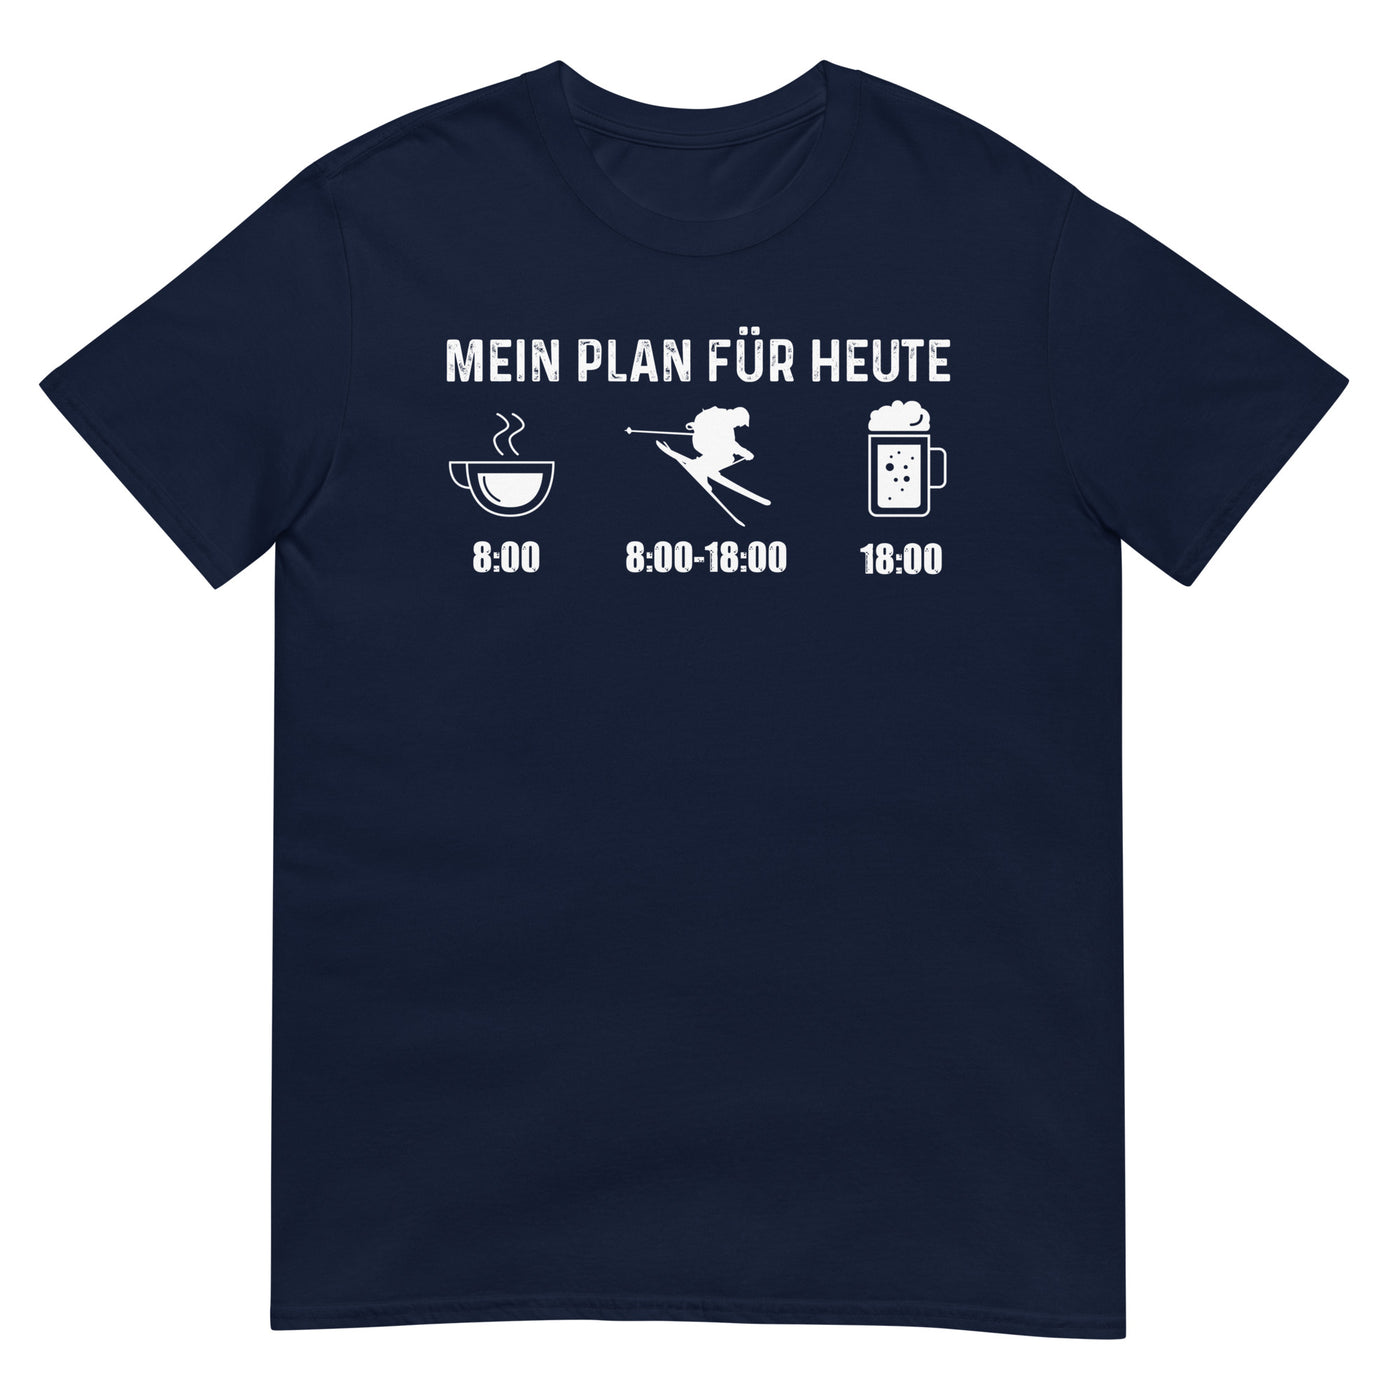 Mein Plan Für Heute - T-Shirt (Unisex) klettern ski xxx yyy zzz Navy